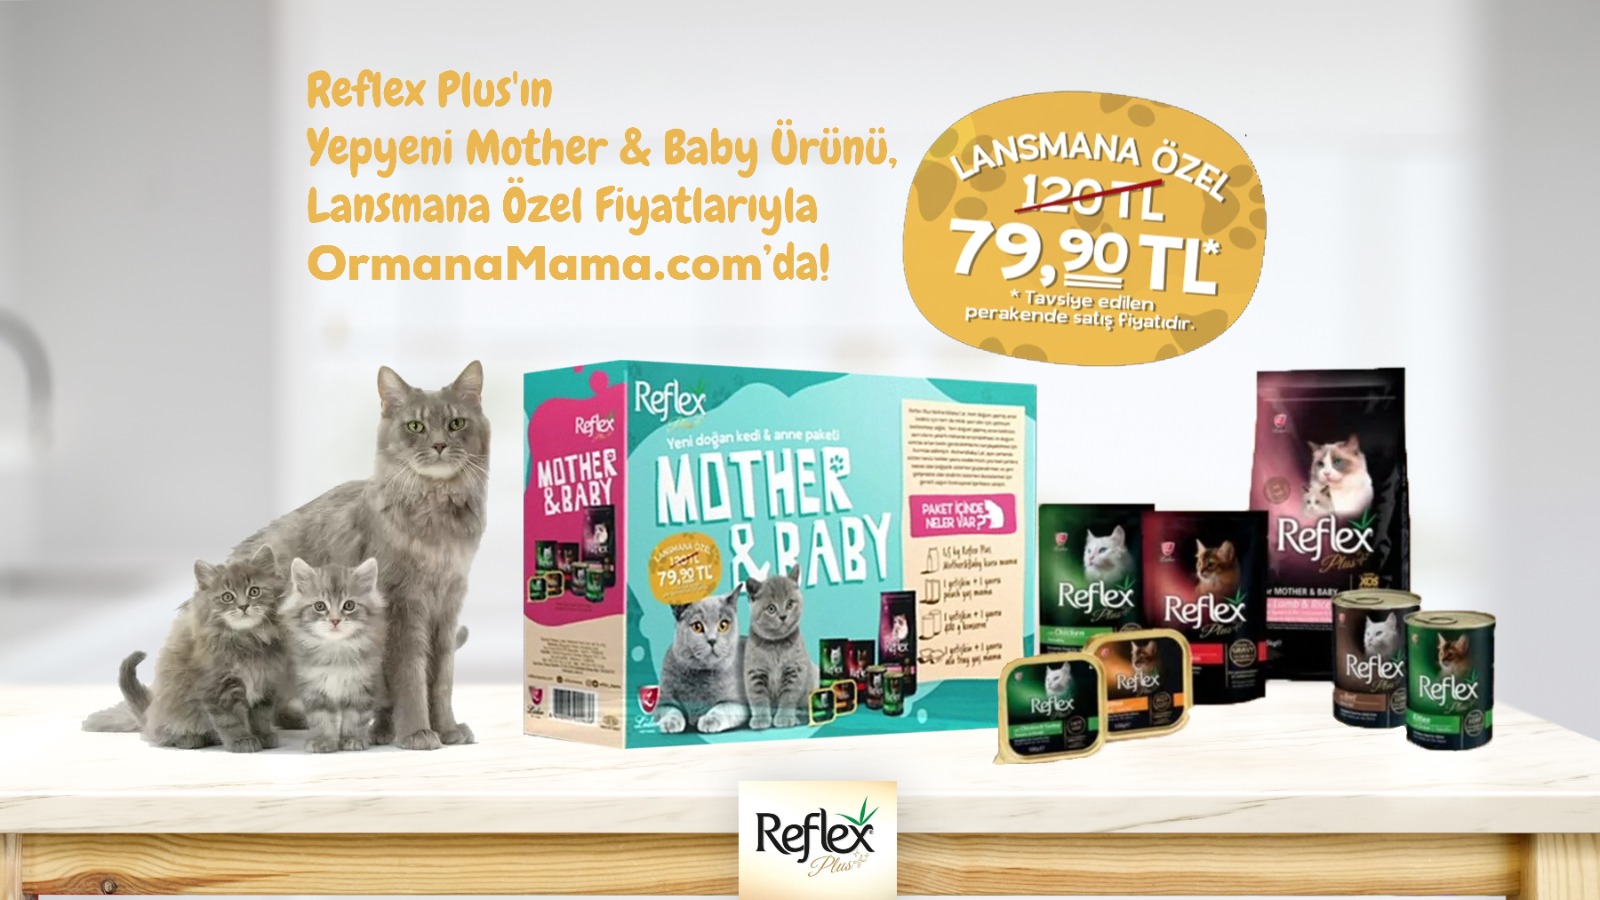 Reflex Plus Mother & Baby Lansman Özel Paketi